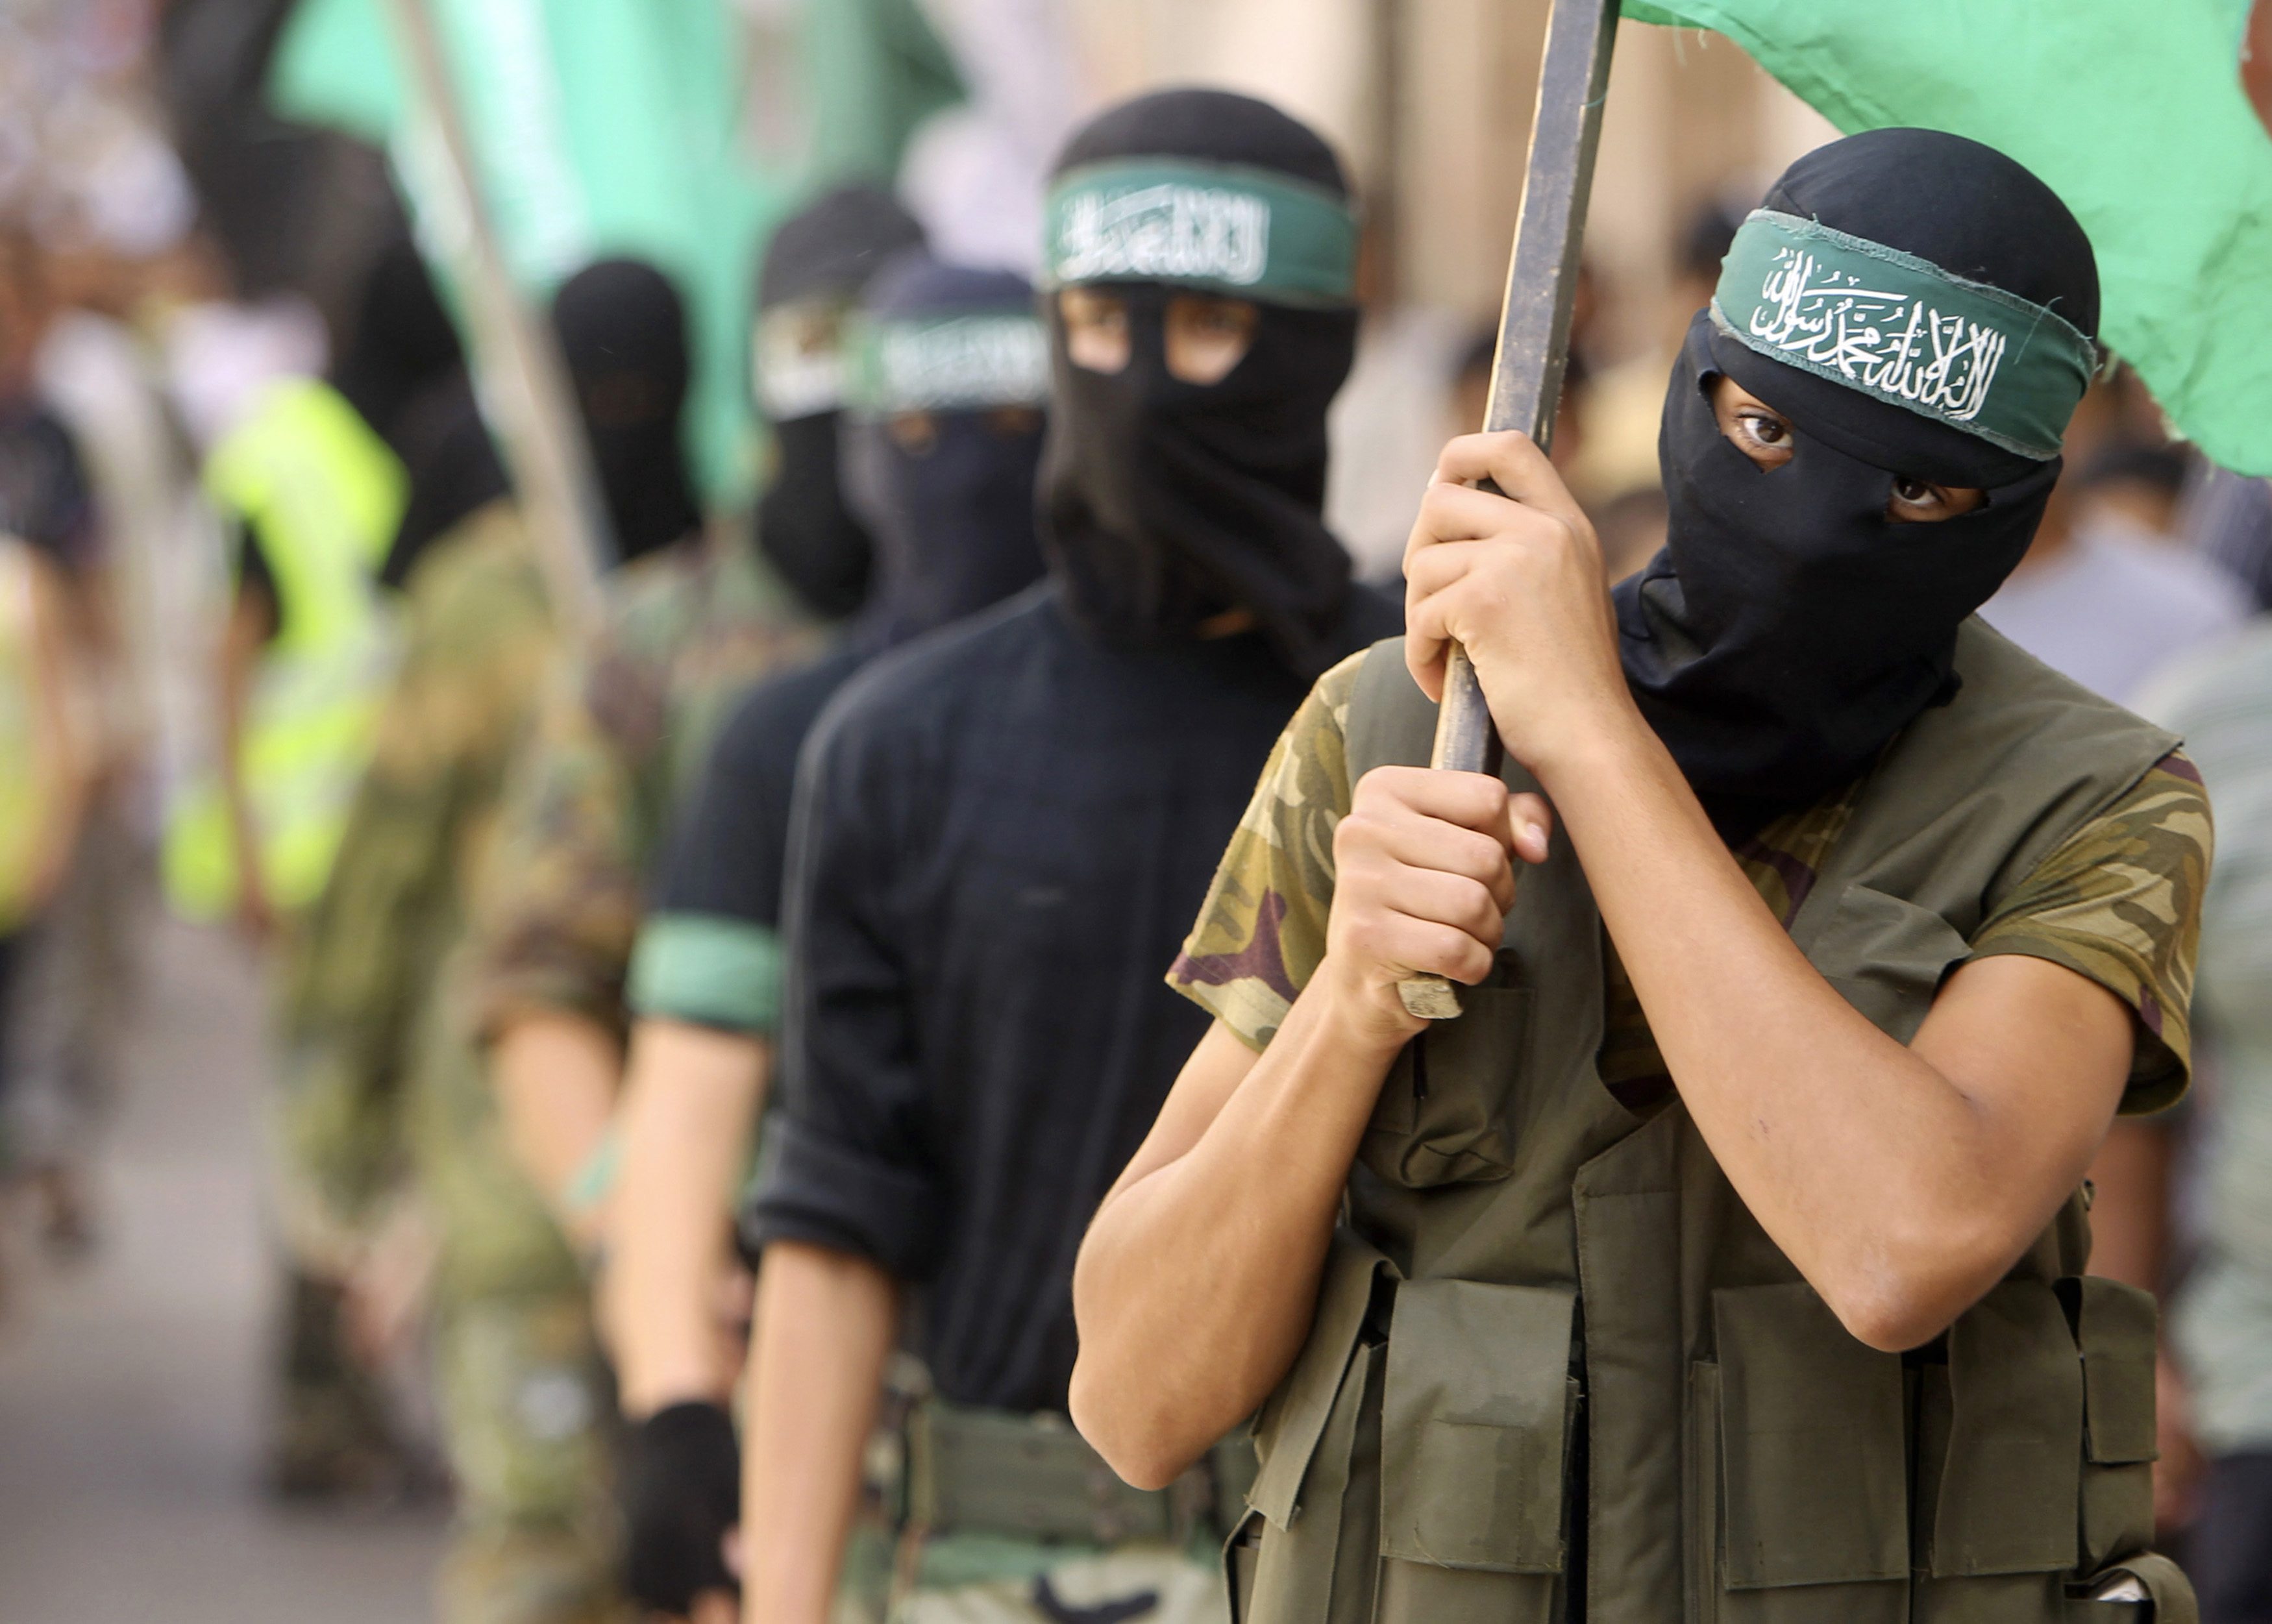 Το Ισραήλ ζήτησε να κηρυχθεί παράνομη η Χαμάς